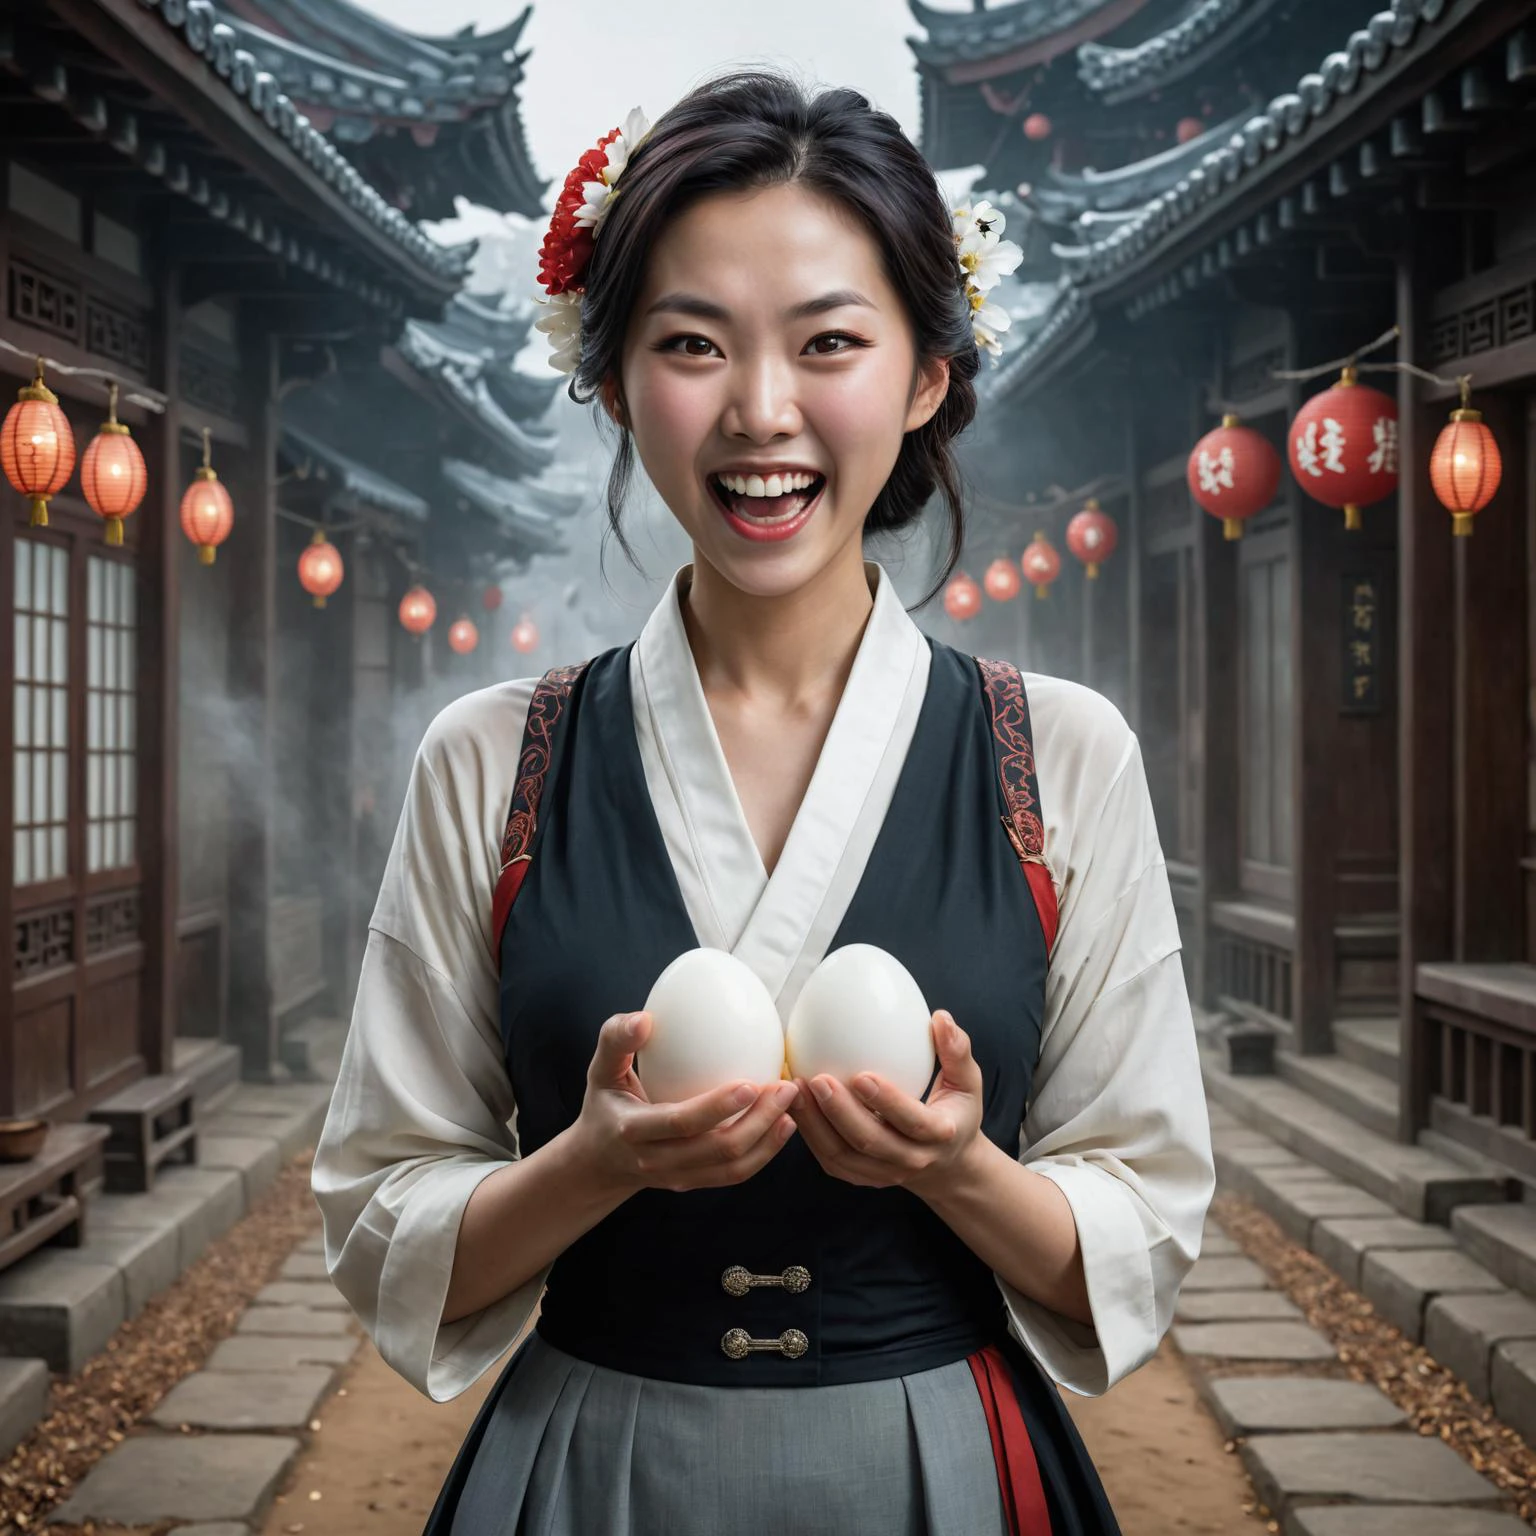 par Terry Oakes et Tom Bagshaw et Andreas Franke, jolie femme coréenne à double usage tenant deux œufs blancs, rire maniaque 